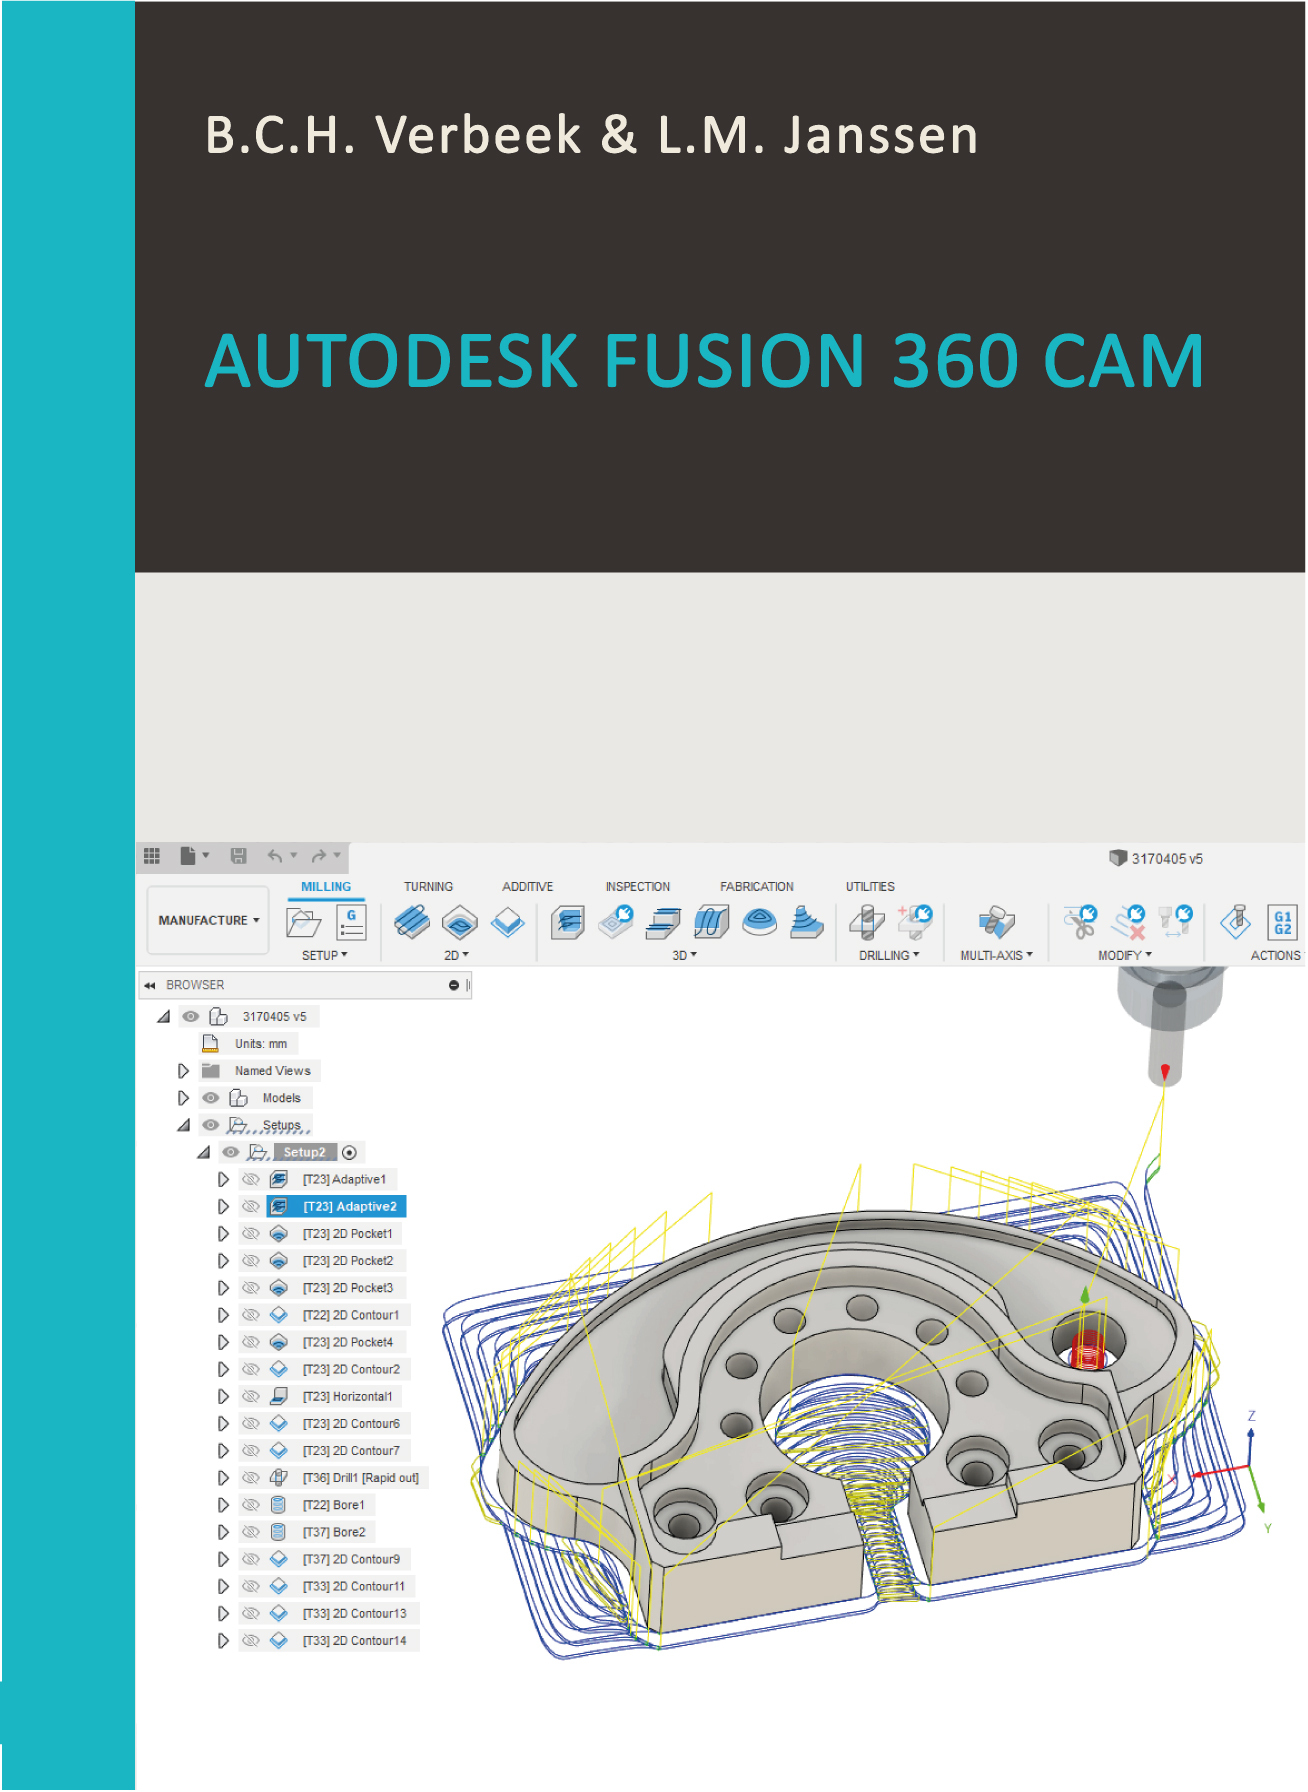 Cursus Fusion 360's thumbnail image